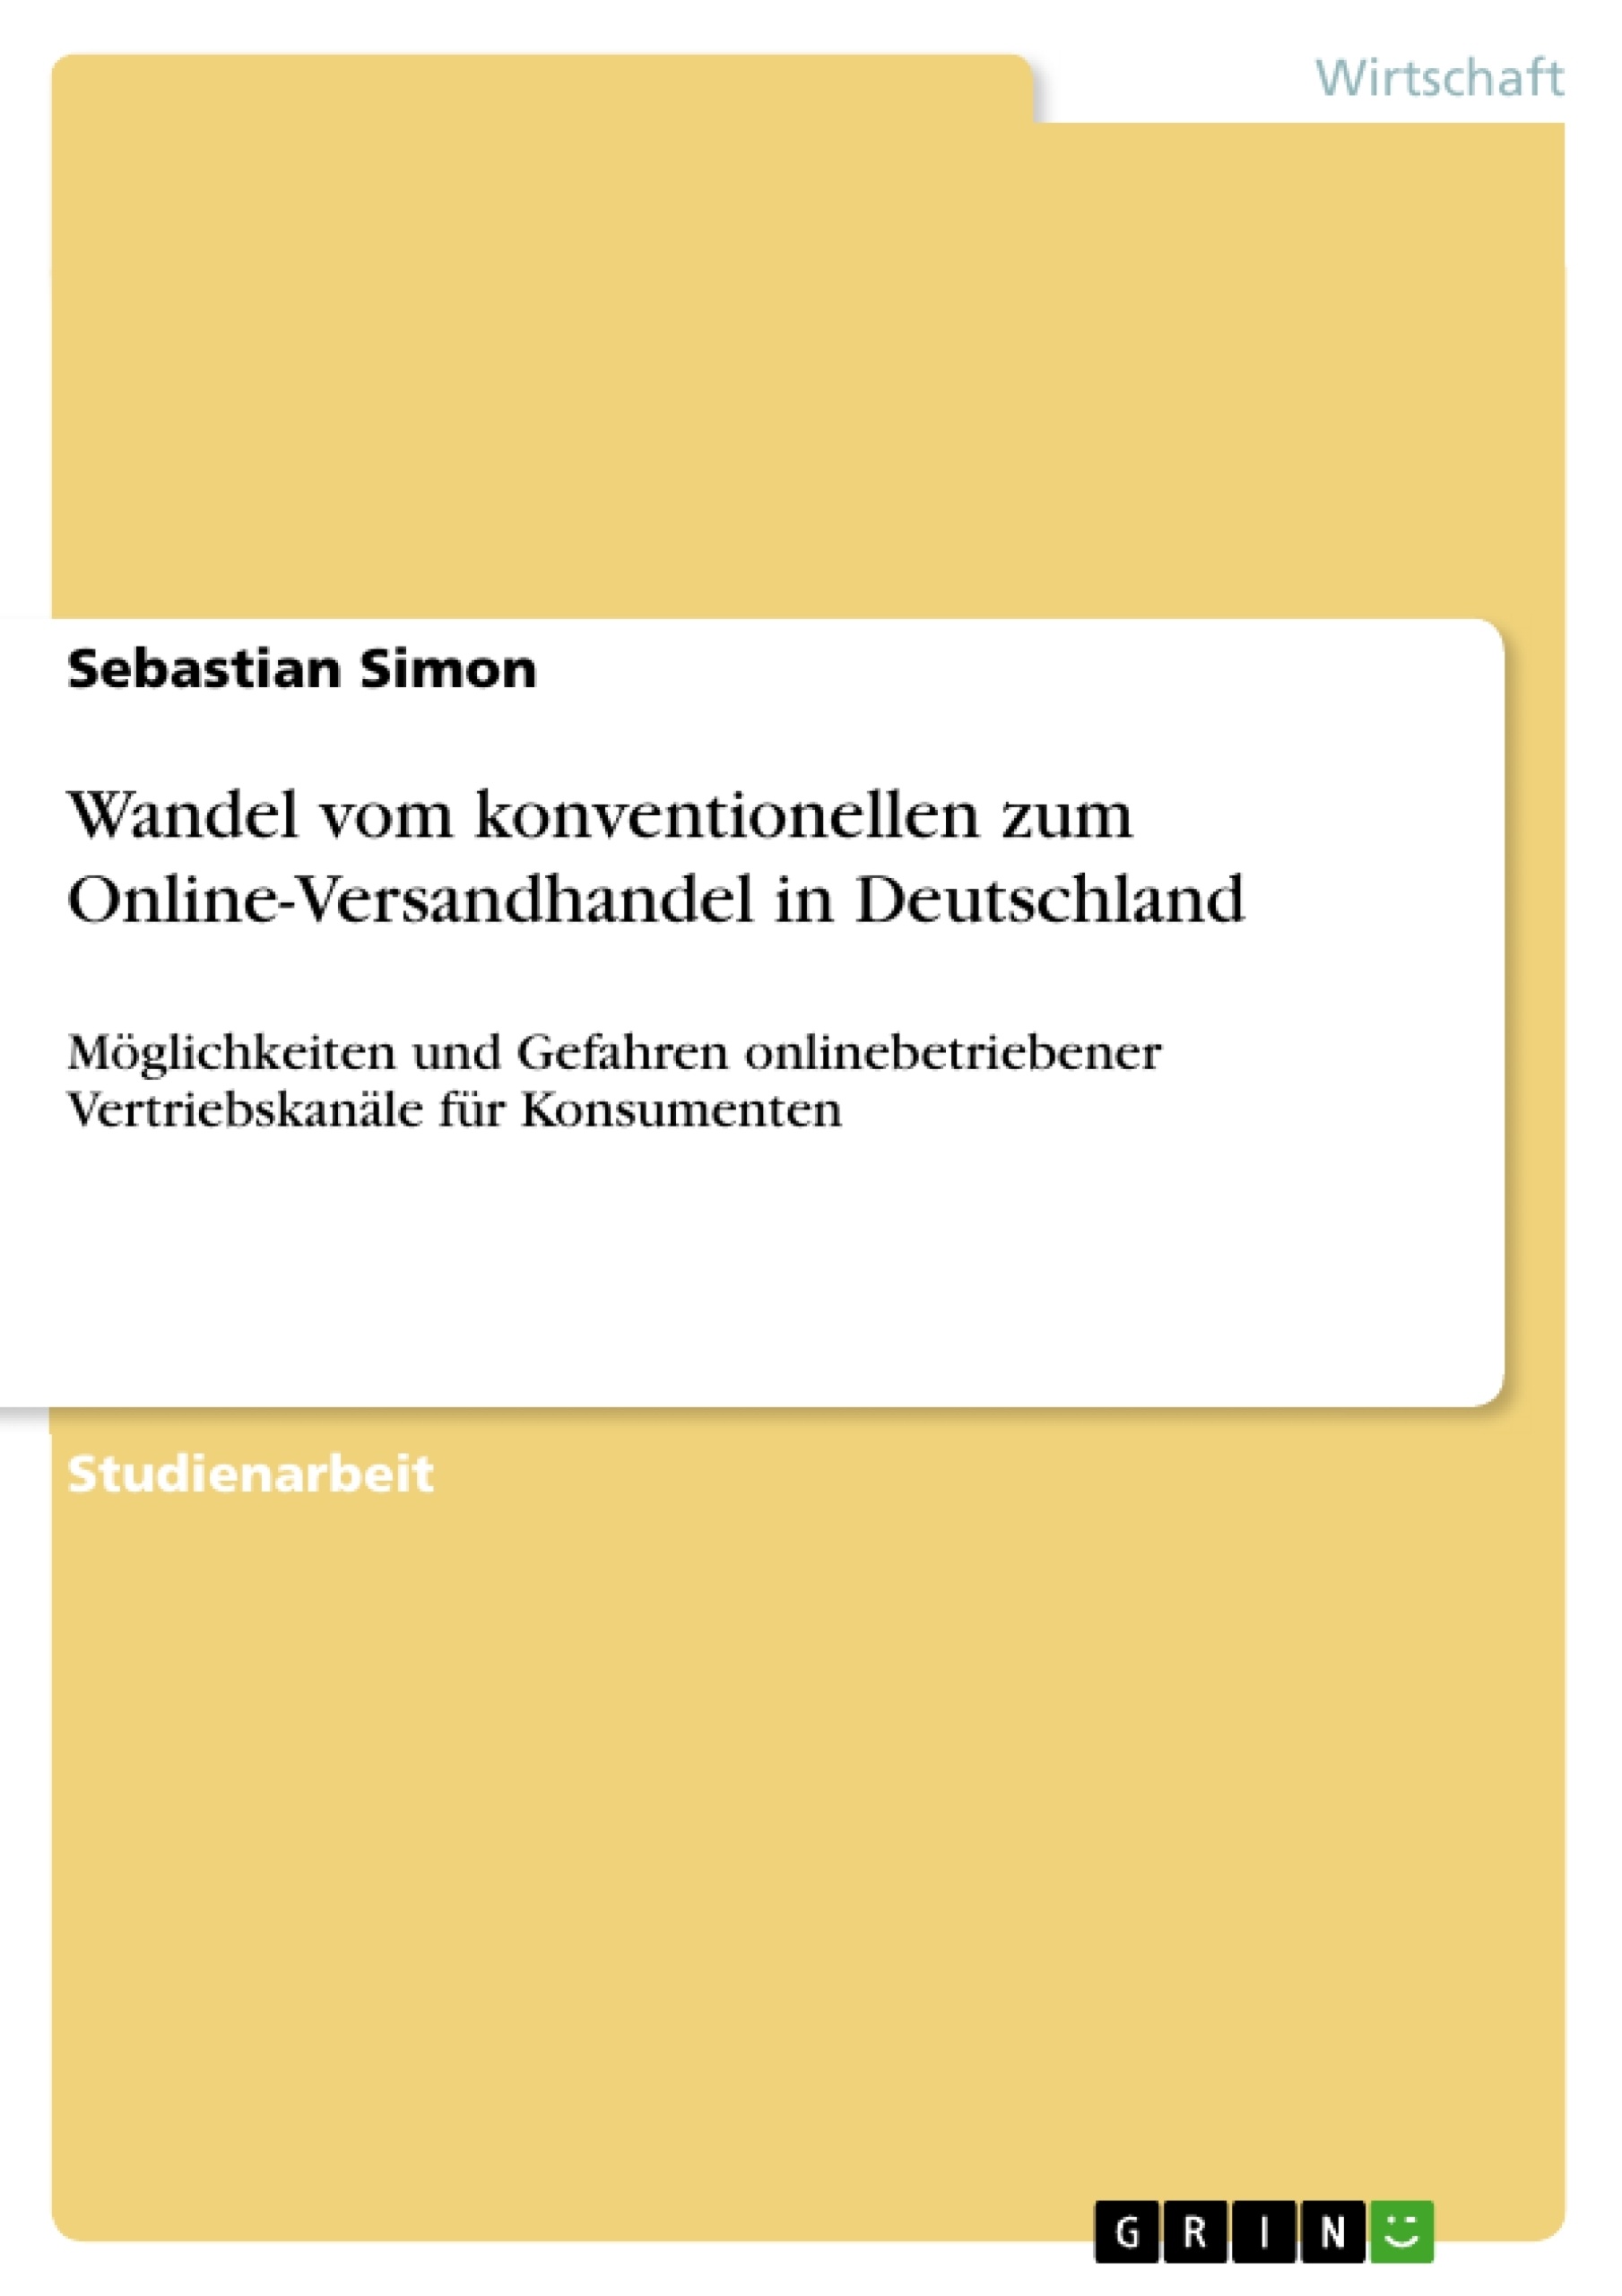 Title: Wandel vom konventionellen zum Online-Versandhandel in Deutschland